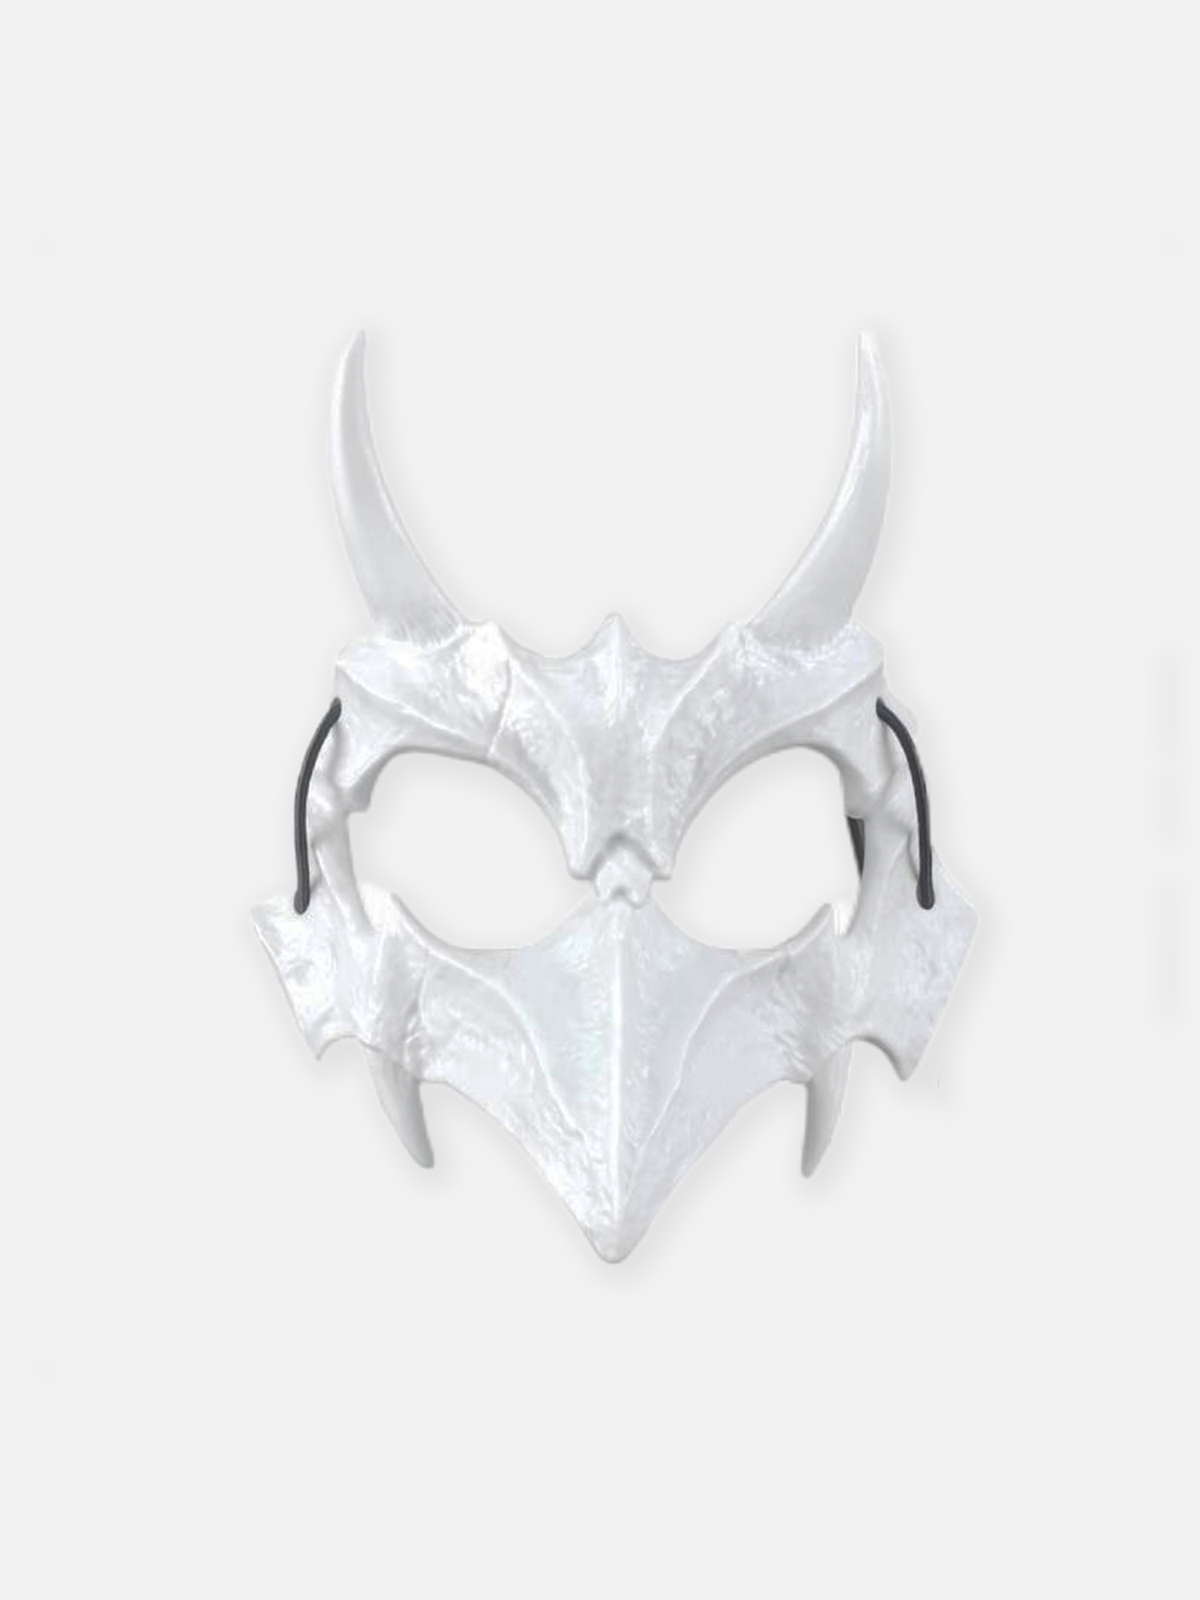 Faire Echo Monster Skull Mask Faire Echo